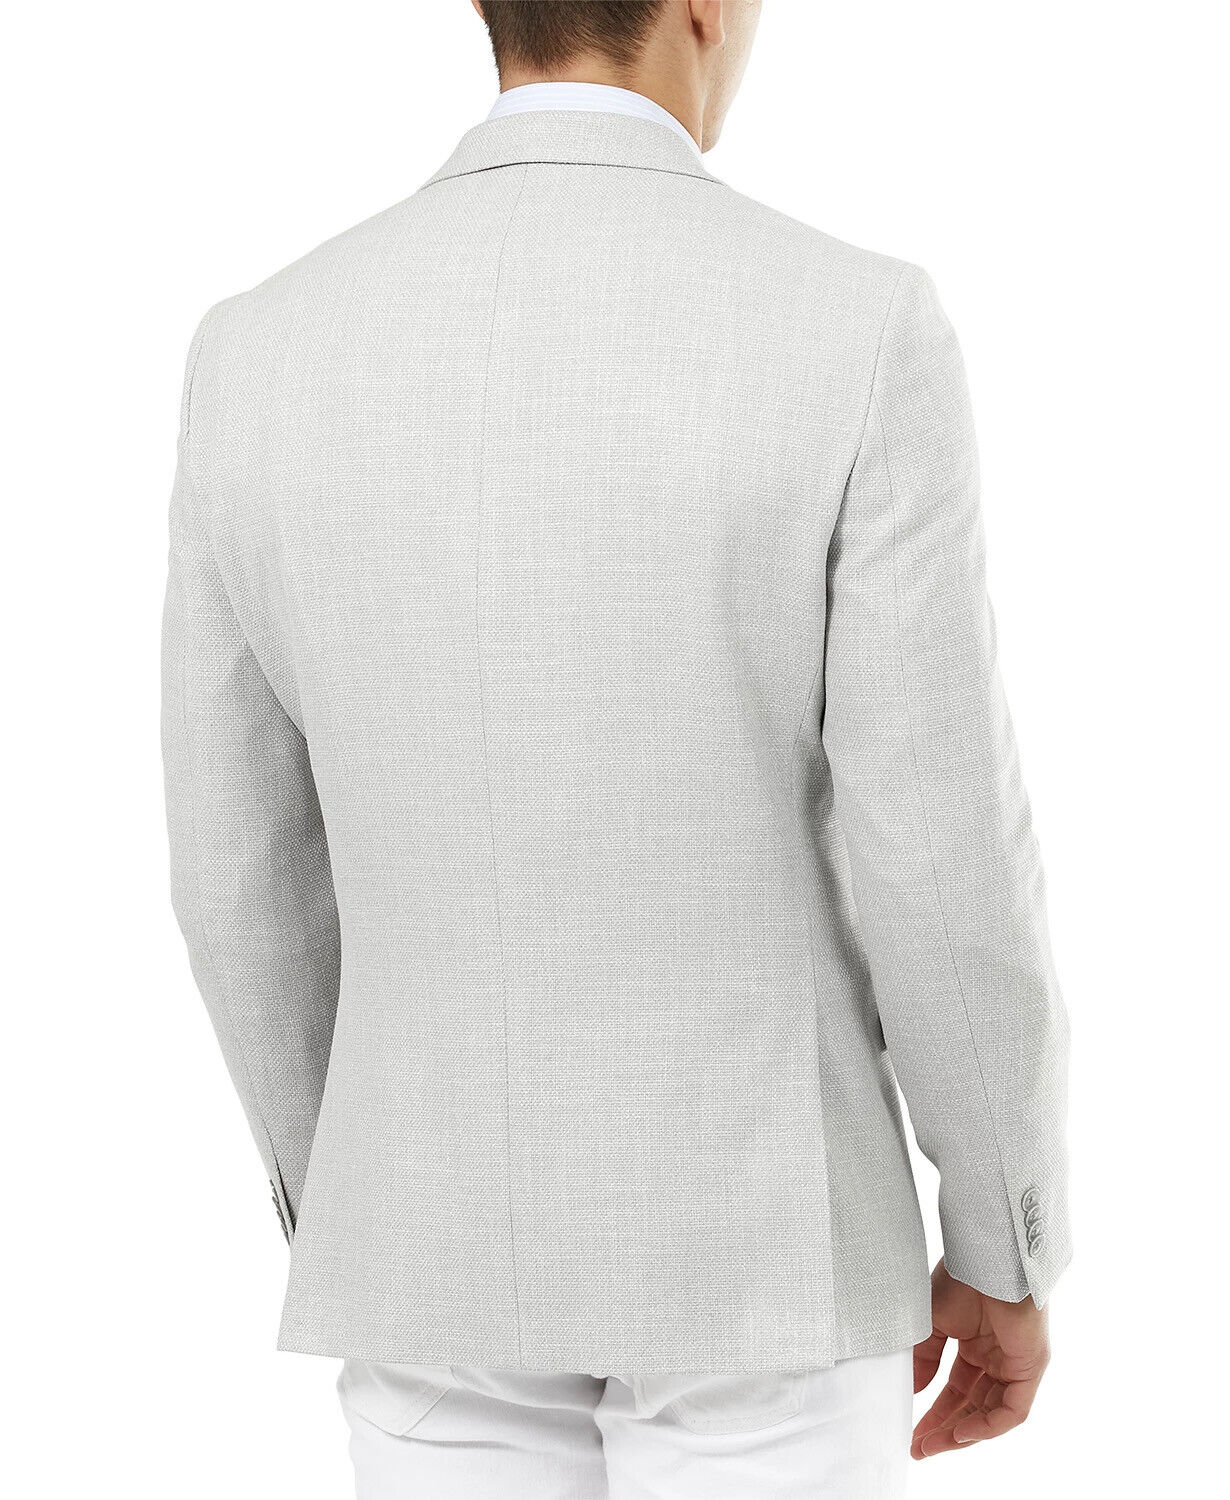 Tommy Hilfiger Men's Slim-Fit Solid Weave Blazer Light Gray 46R Sport Coat